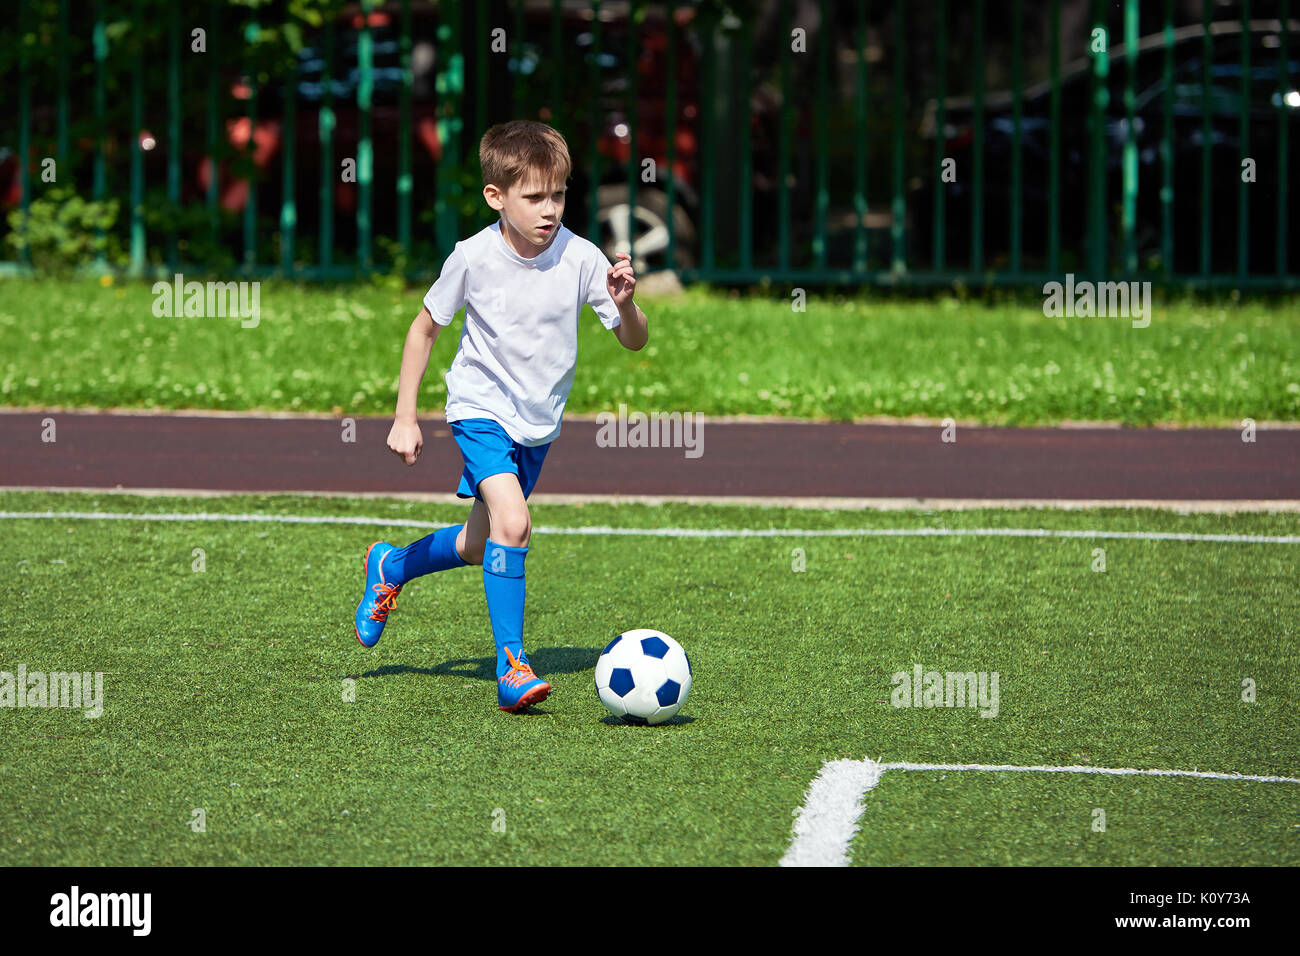 Junge Fußball-Spieler läuft mit dem Ball auf dem grünen Rasen des stadiumм Stockfoto